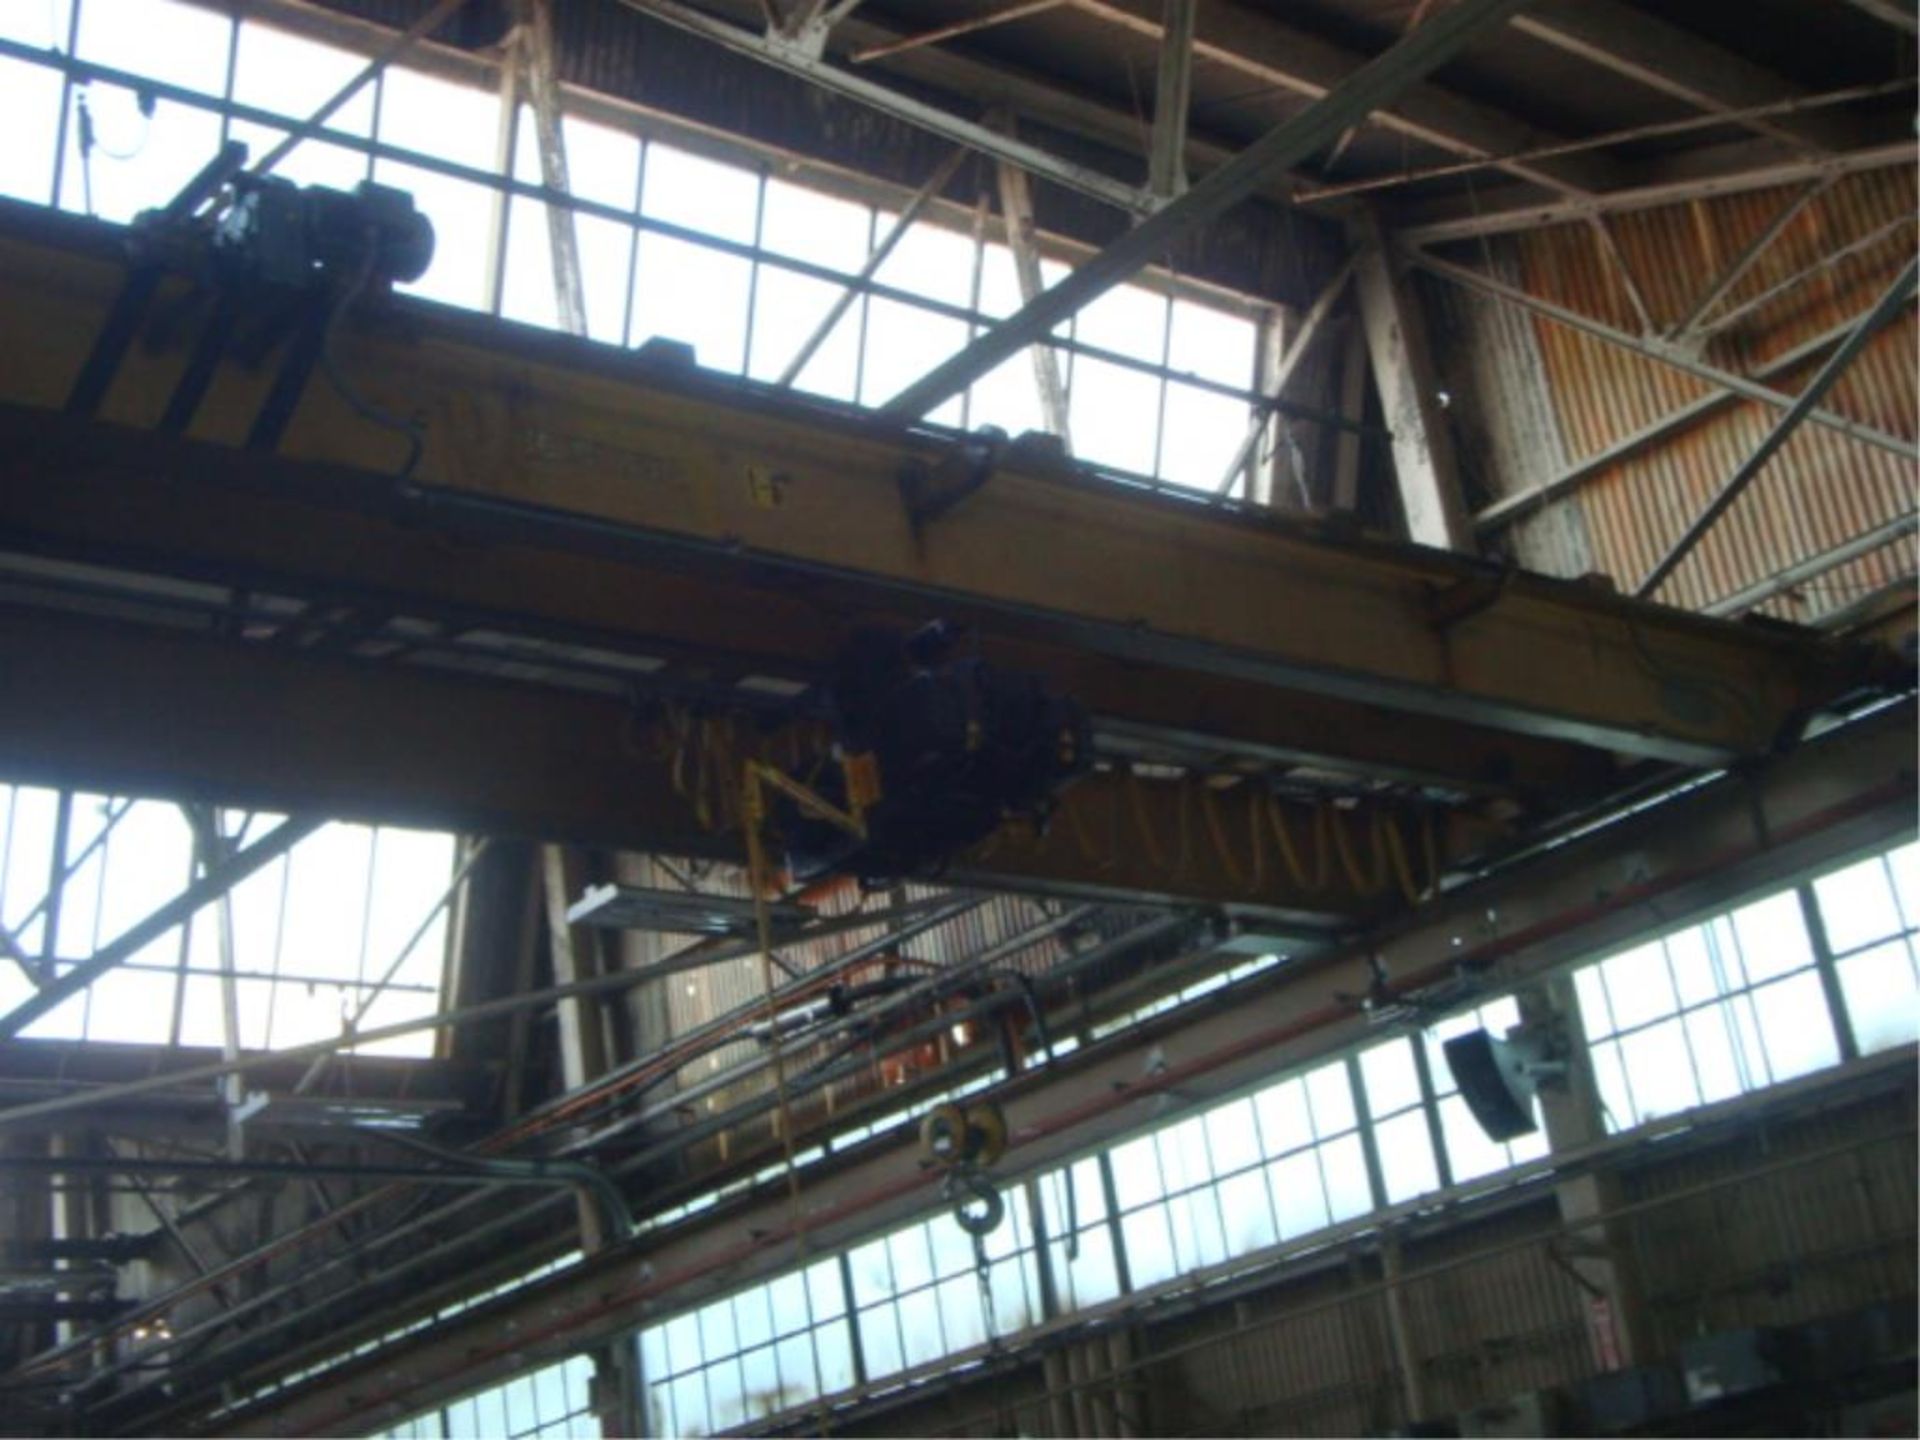 5-Ton Capacity Overhead Bridge Crane - Image 12 of 14